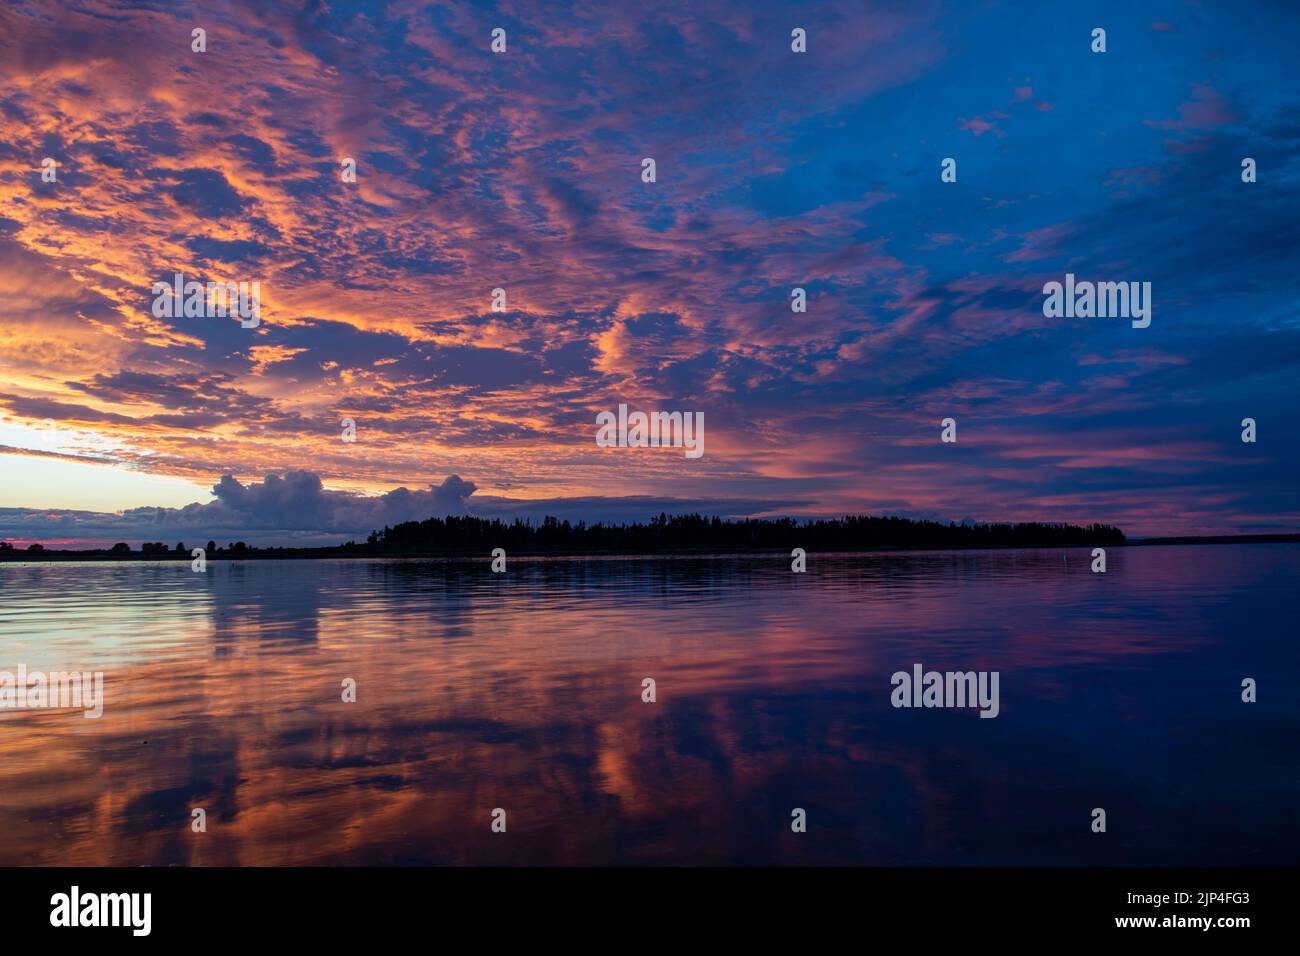 August 13, 2022,7:50:11pm. Sonnenuntergang in der Casco Bay von Barnes Island. Whaleboat Island in der Mitte. Stockfoto